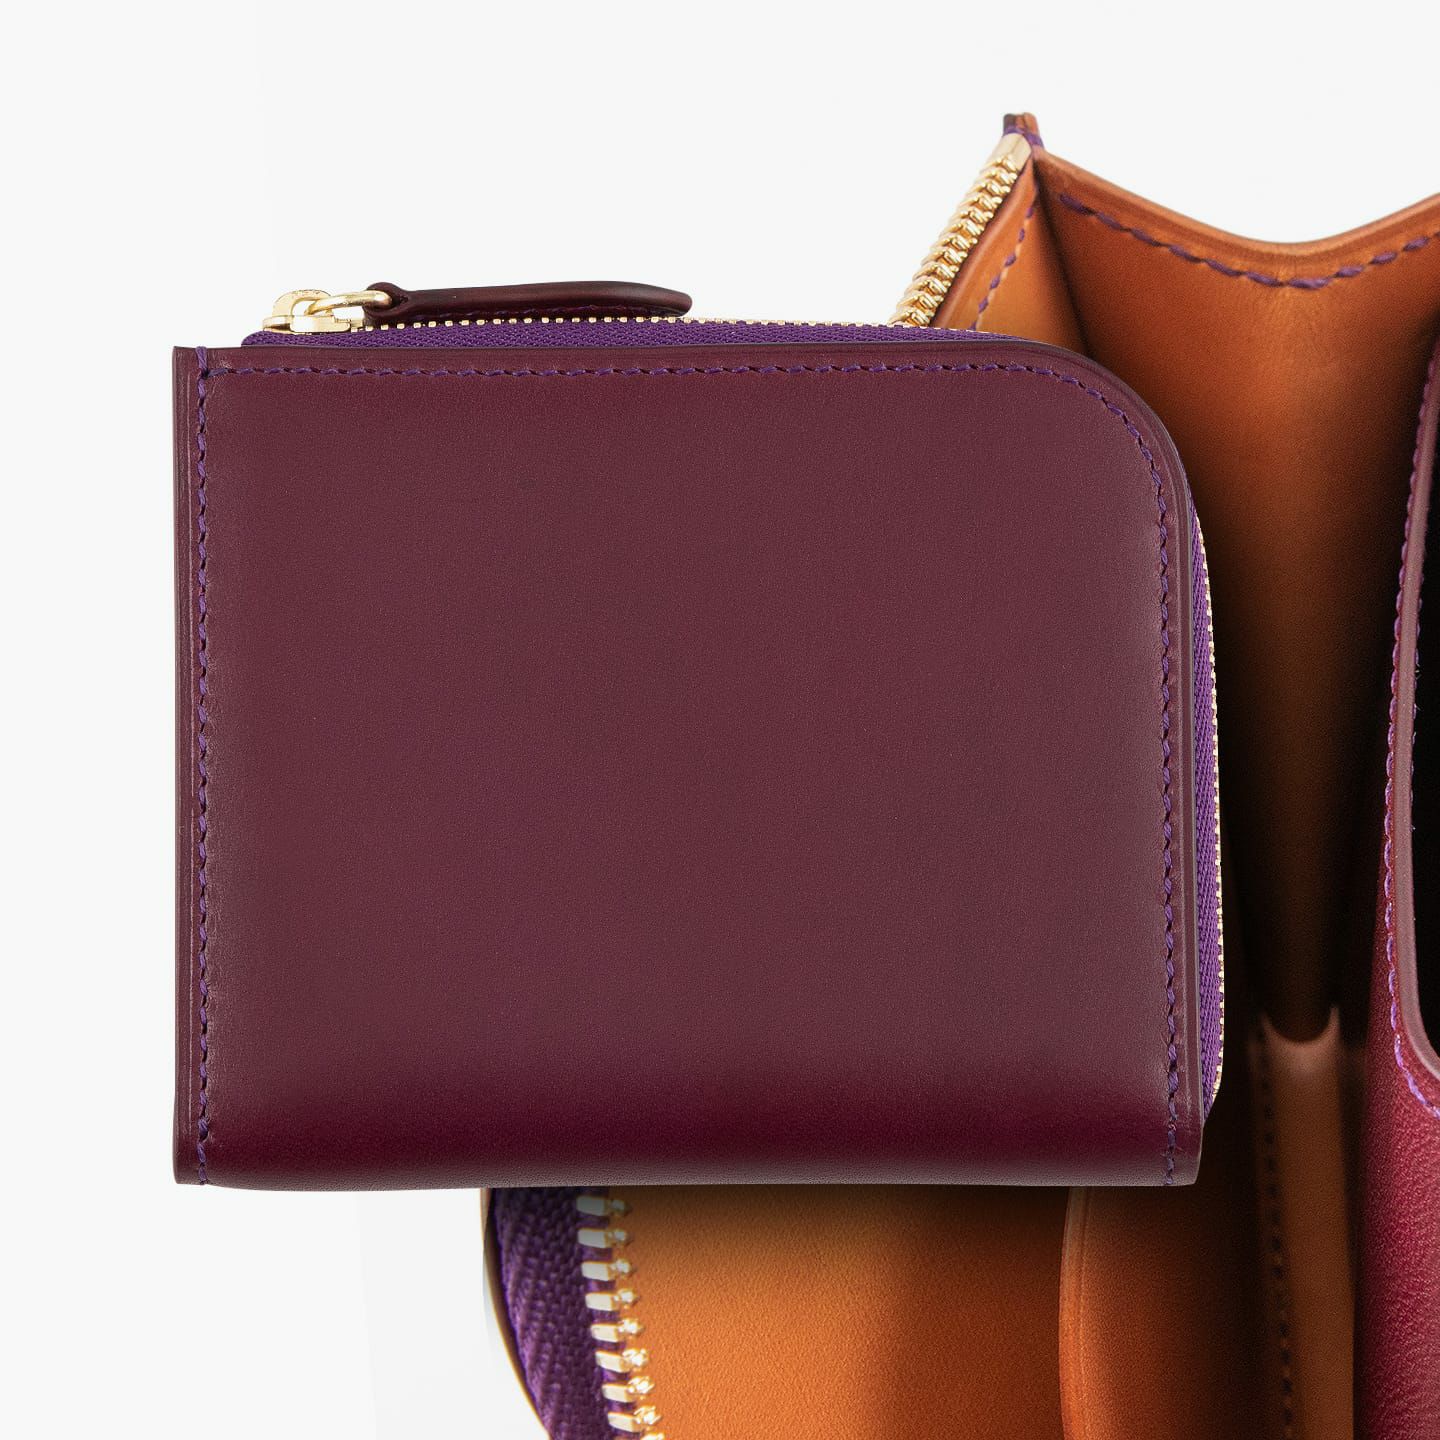 外装＆内装コインポケット（イングラサット）：Purple、内装（イングラサット）：Tan、糸色：外装＆内装コインポケットと同系色、ファスナー：Gold、引き手：外装と同じ革